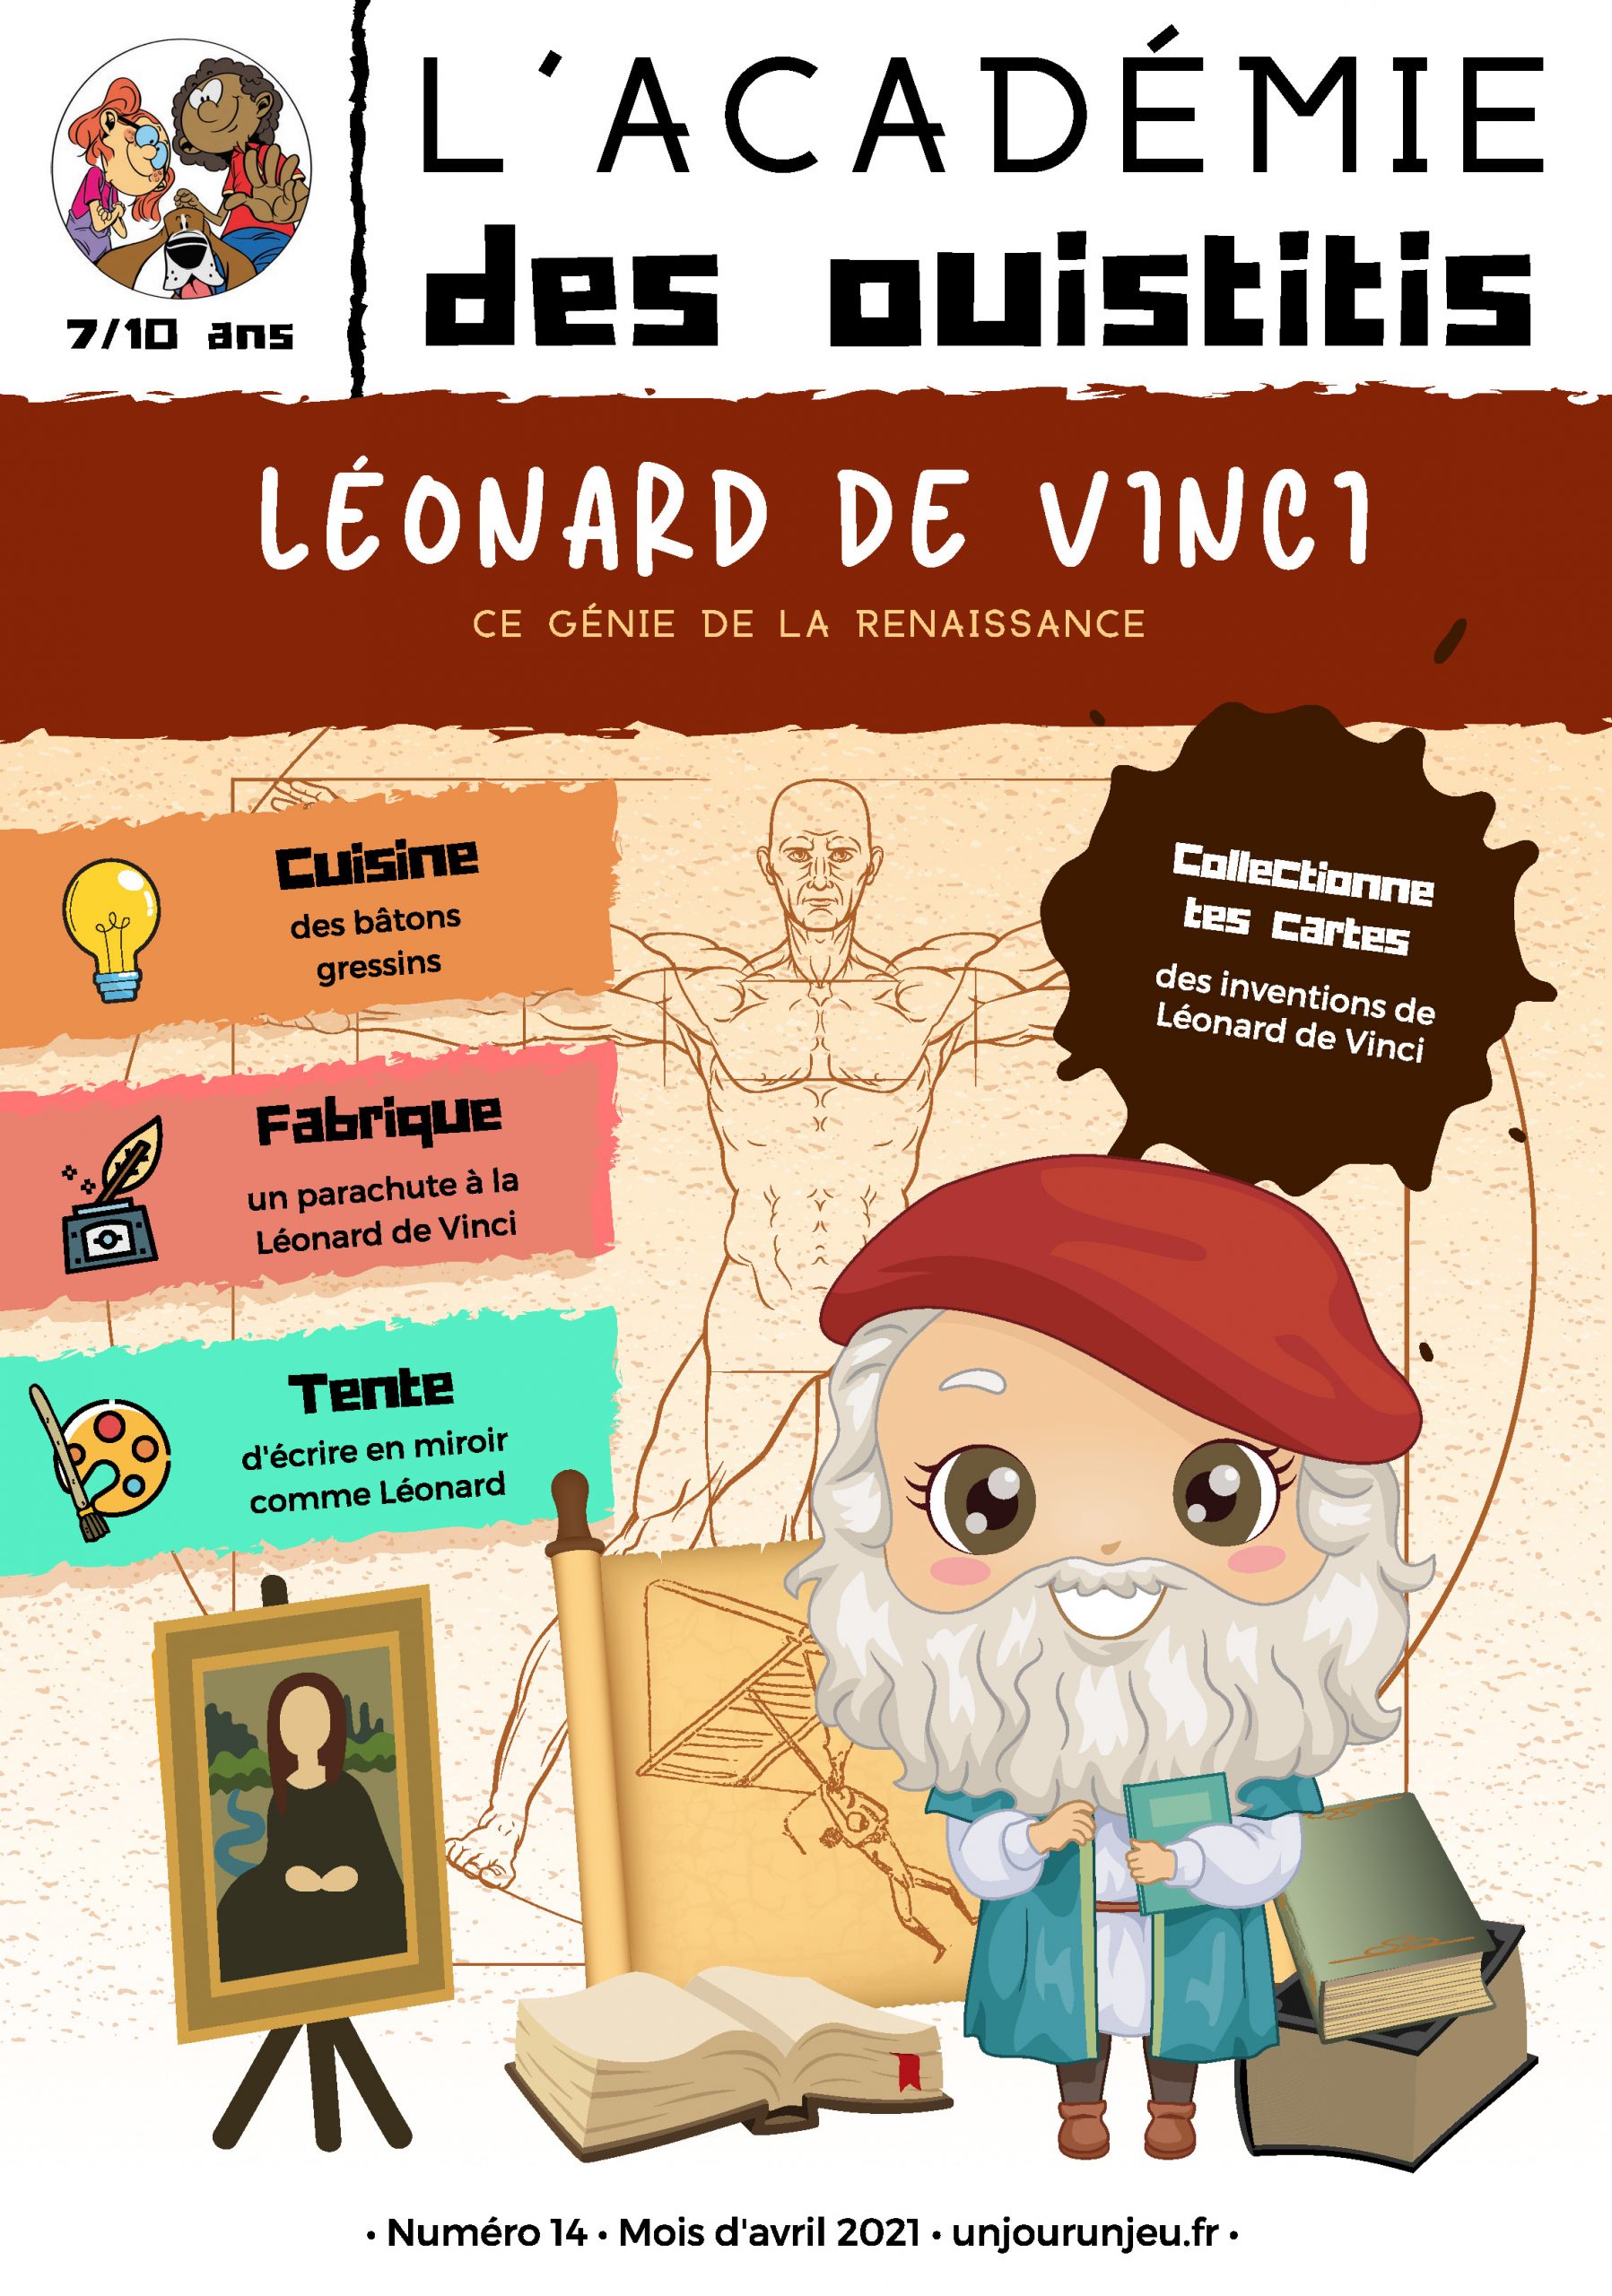 L'Académie des Ouistitis et Léonard de Vinci